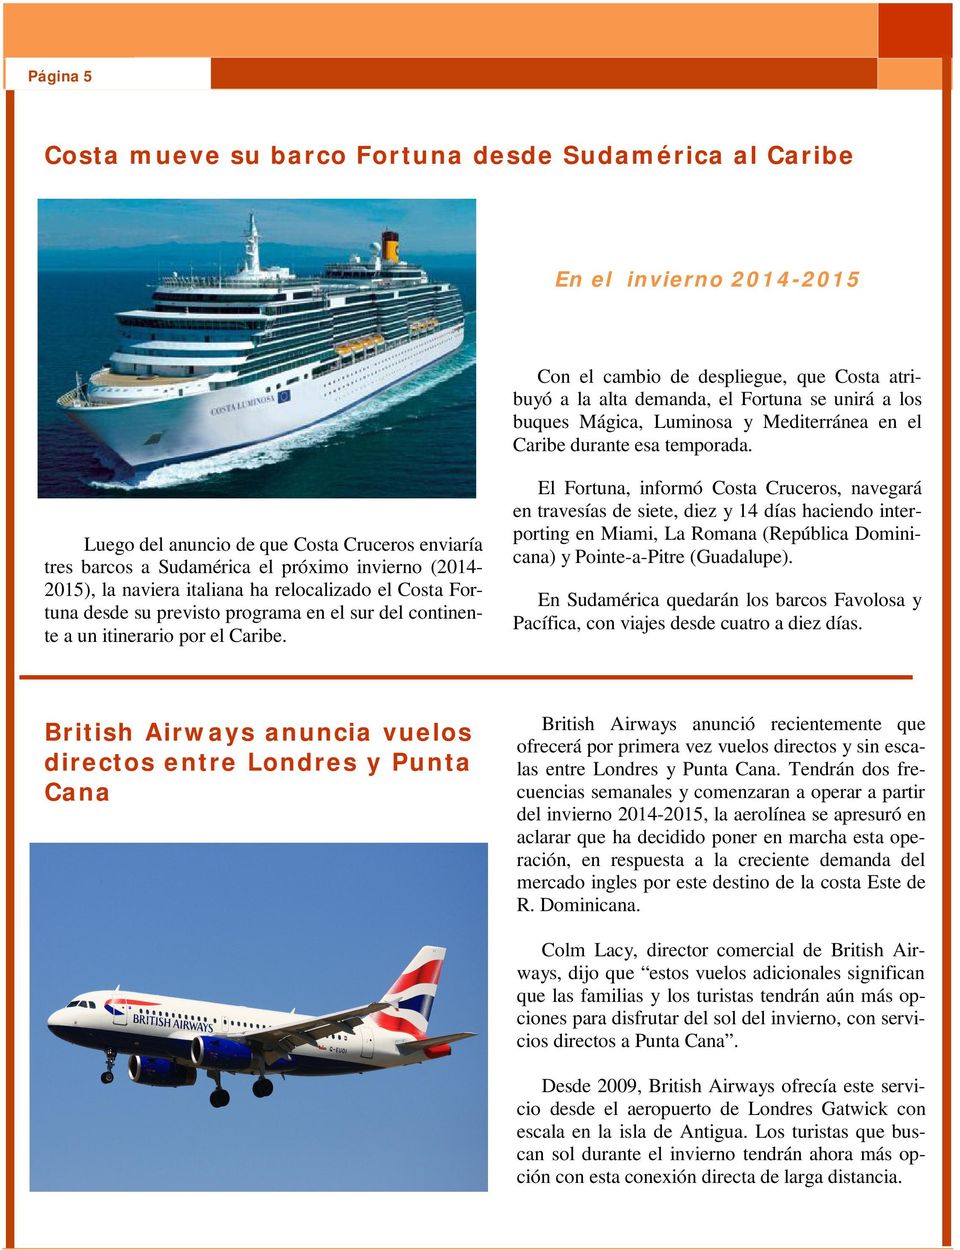 Luego del anuncio de que Costa Cruceros enviaría tres barcos a Sudamérica el próximo invierno (2014-2015), la naviera italiana ha relocalizado el Costa Fortuna desde su previsto programa en el sur